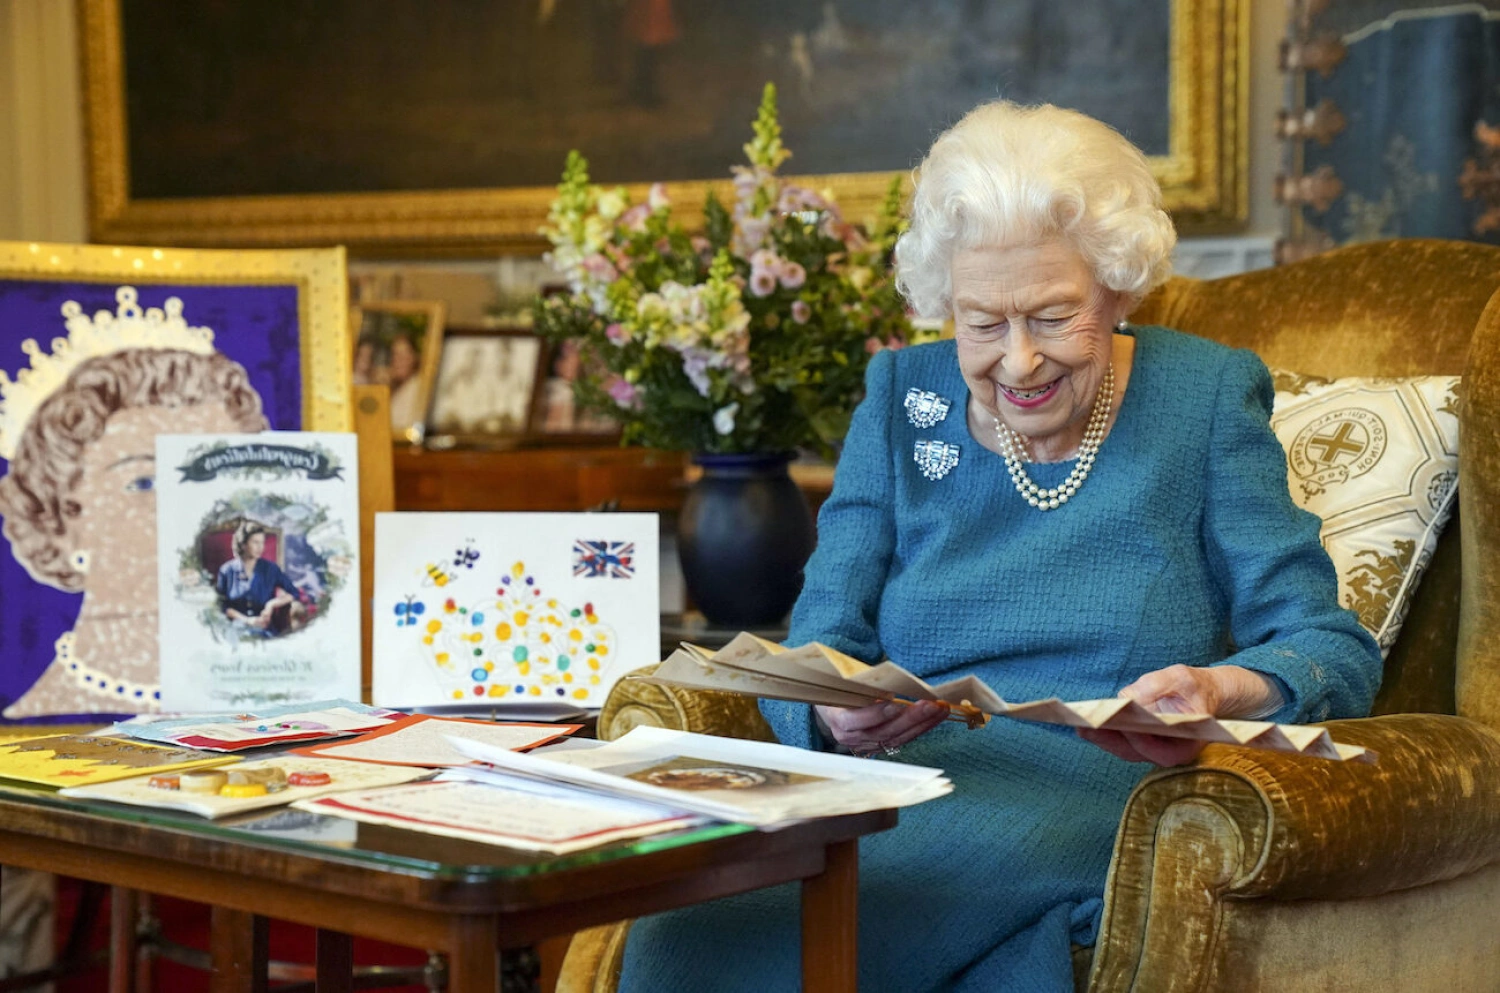 Kráľovná Alžbeta zomrela vo veku 96 rokov. Bola najdlhšie vládnucou panovníčkou Británie